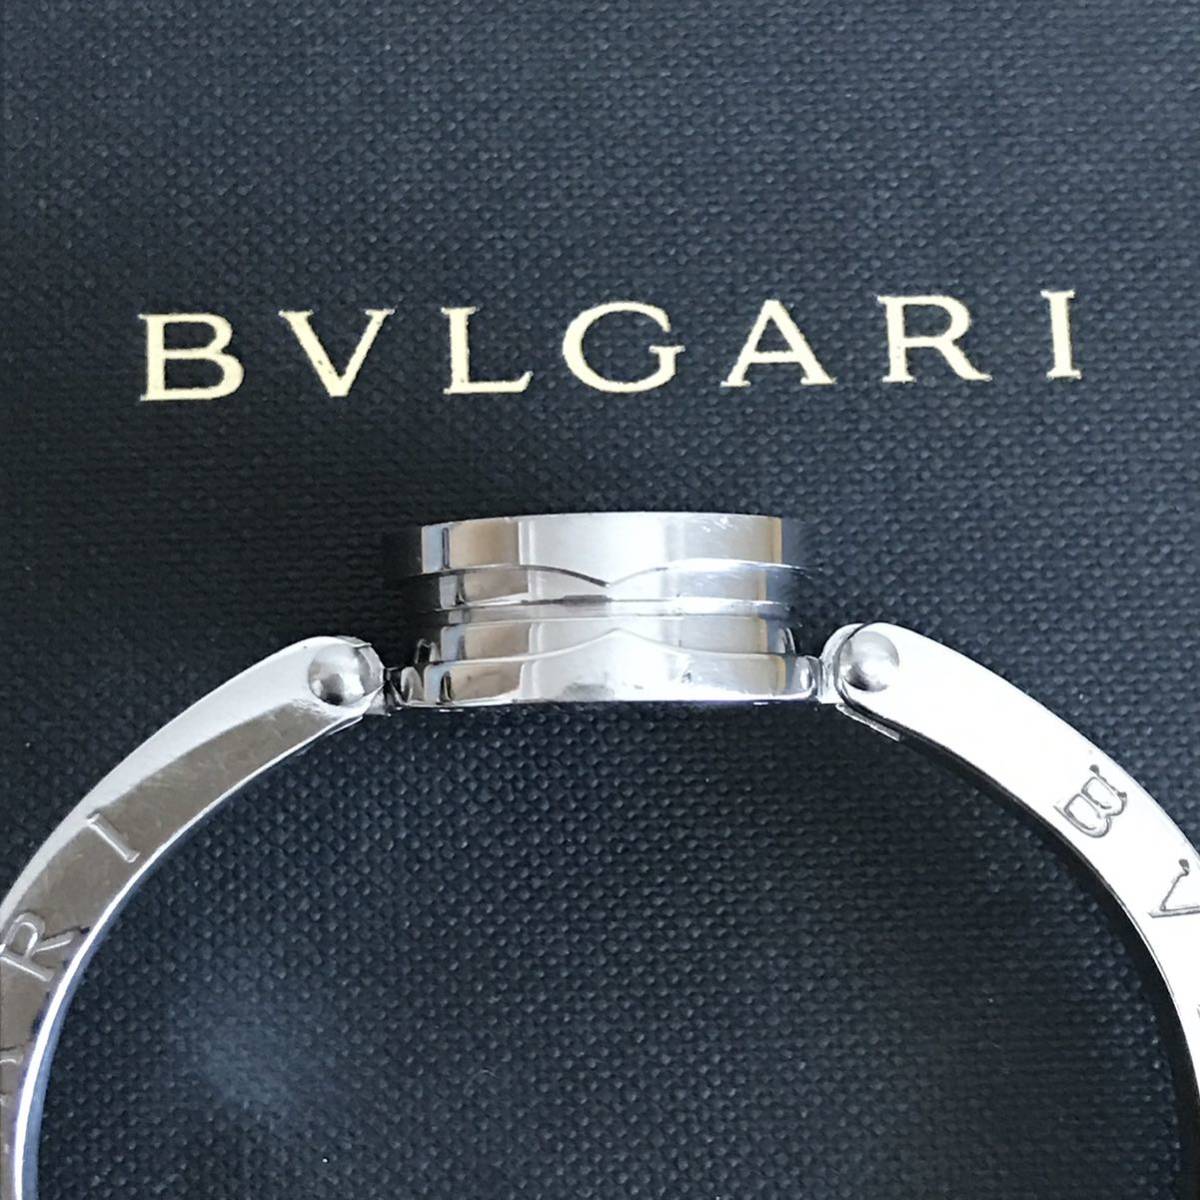 BVLGARI BVLGARY Be Zero One M размер diamond часы утиль 